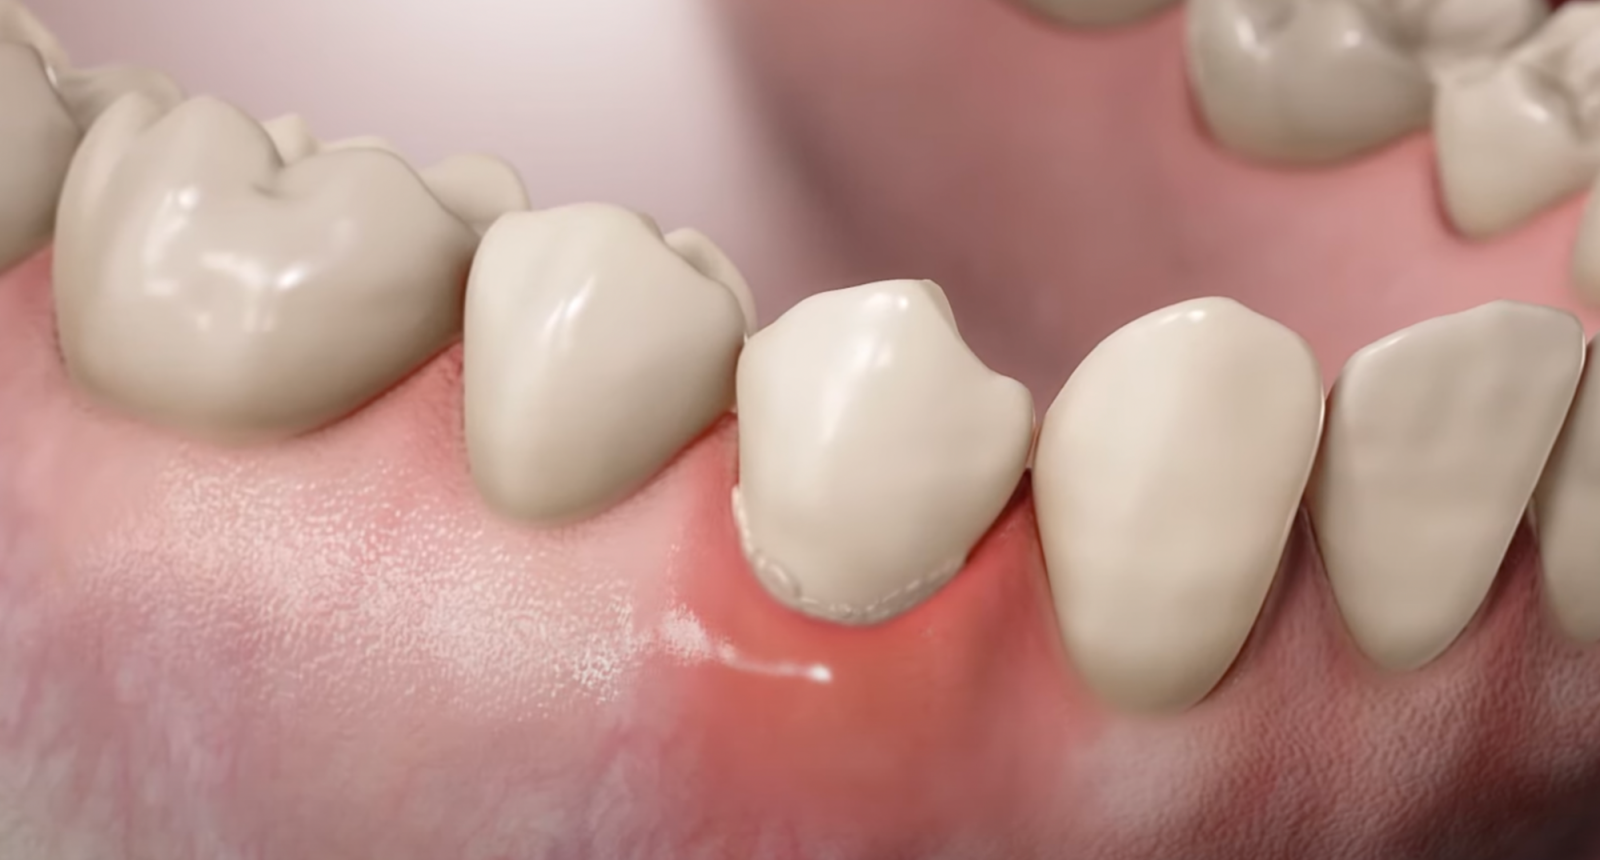 Чем опасно оголение шейки зуба?